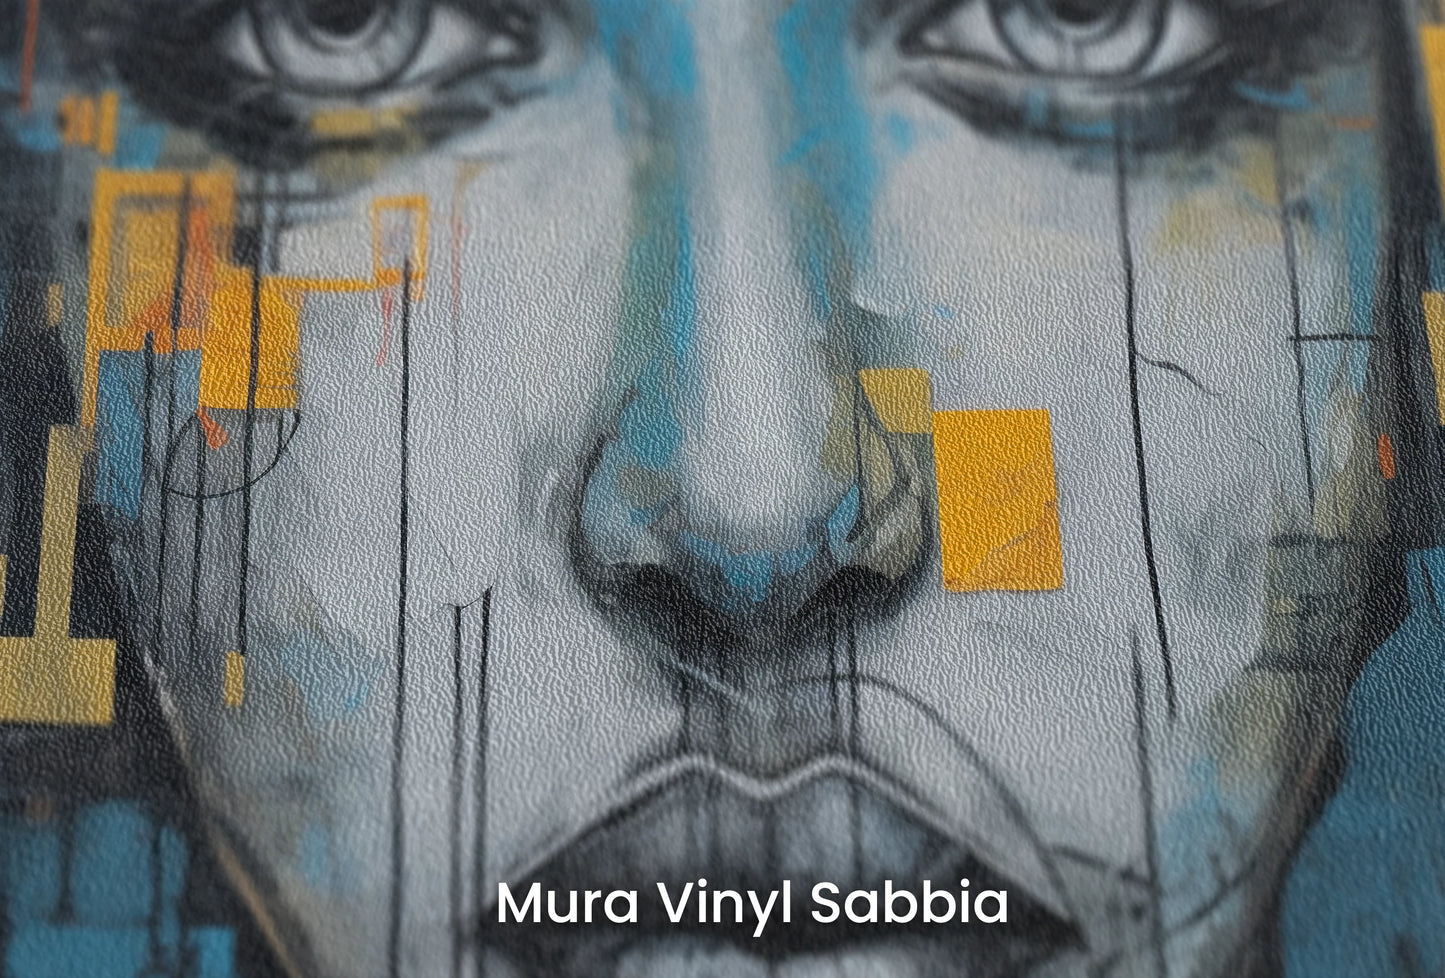 Zbliżenie na artystyczną fototapetę o nazwie Urban Gaze na podłożu Mura Vinyl Sabbia struktura grubego ziarna piasku.